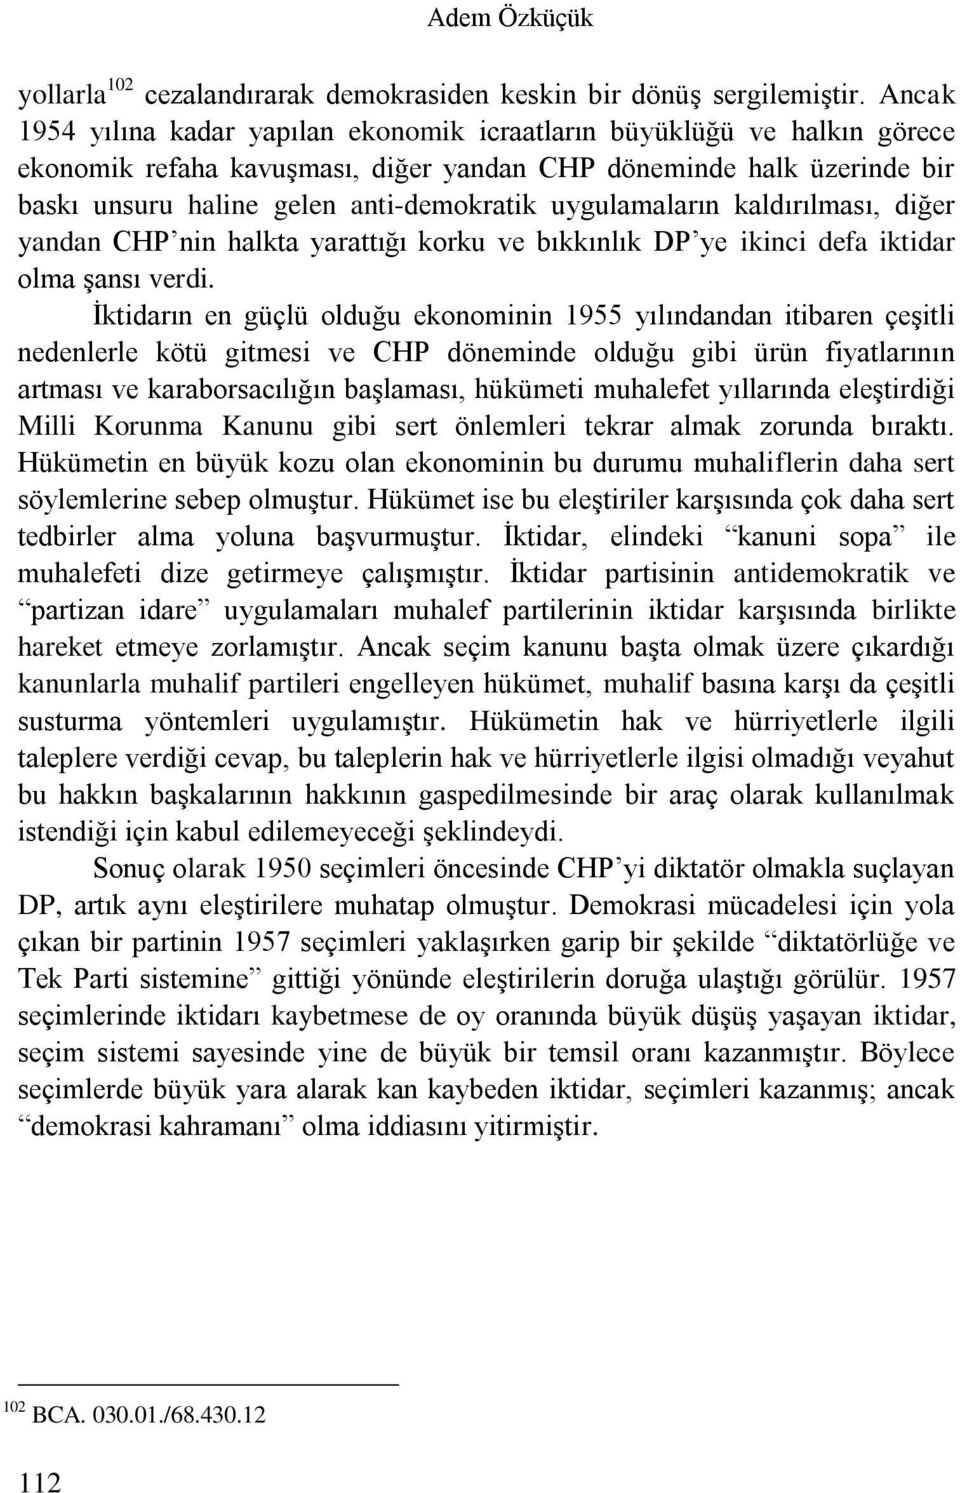 uygulamaların kaldırılması, diğer yandan CHP nin halkta yarattığı korku ve bıkkınlık DP ye ikinci defa iktidar olma şansı verdi.